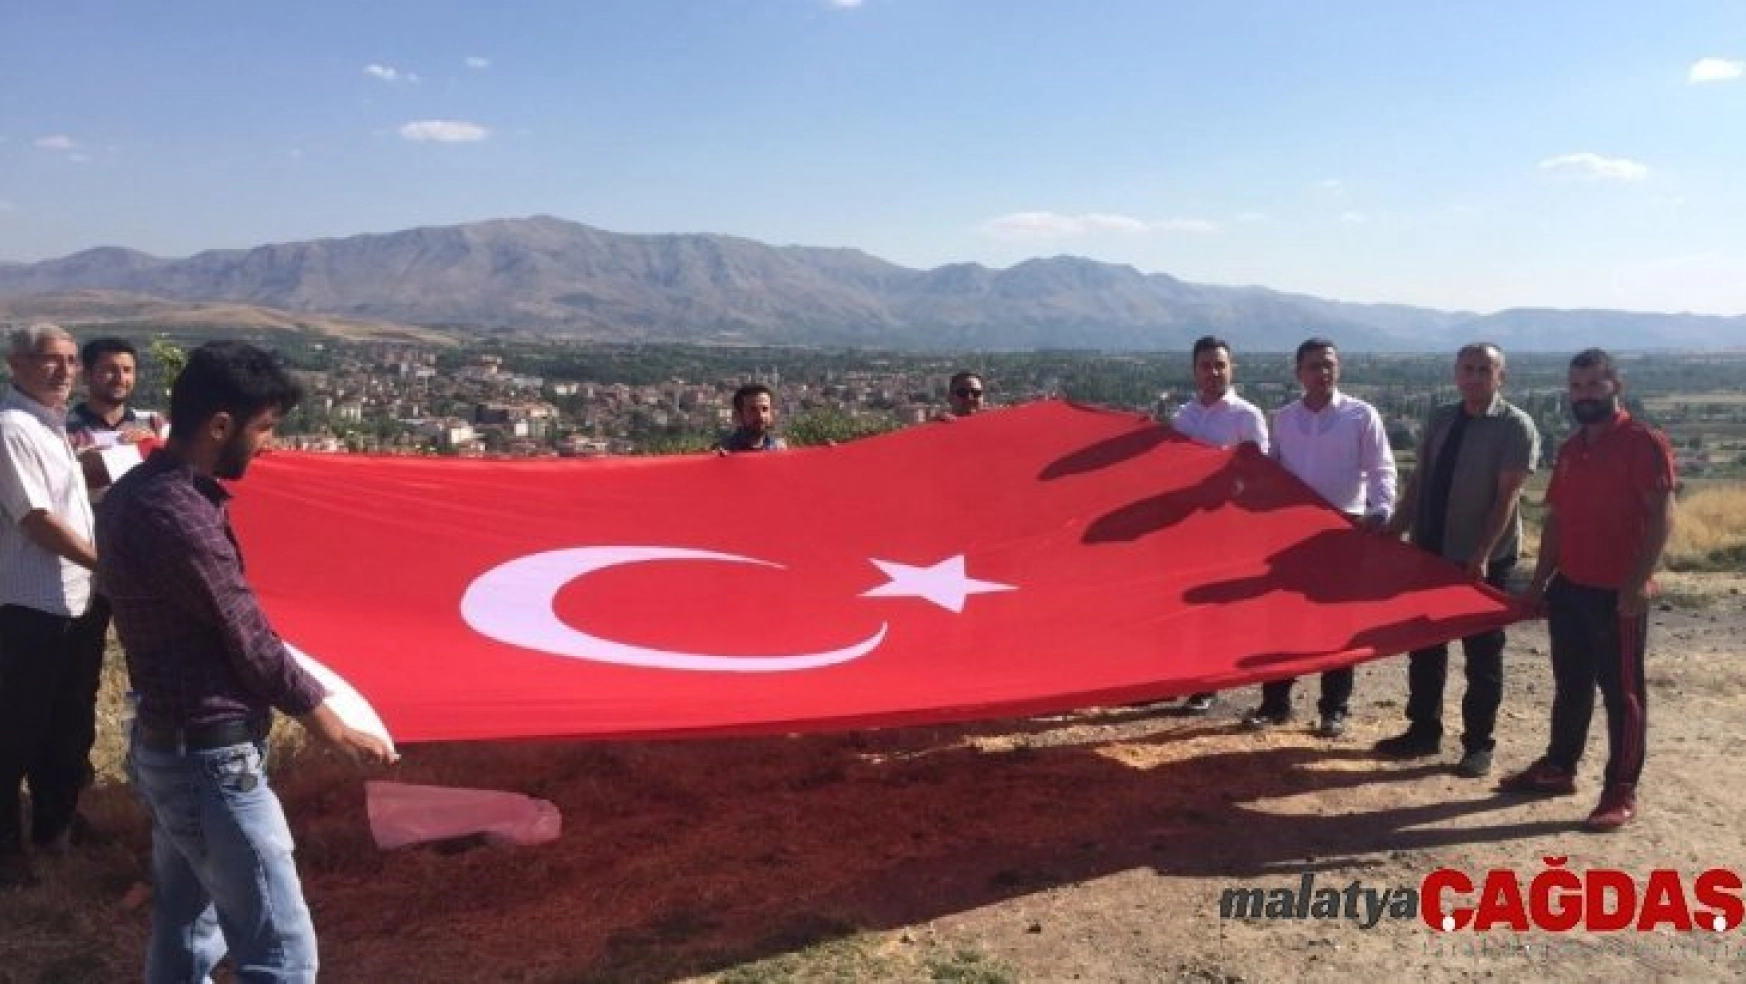 Doğanşehir'de dev Türk Bayrağı